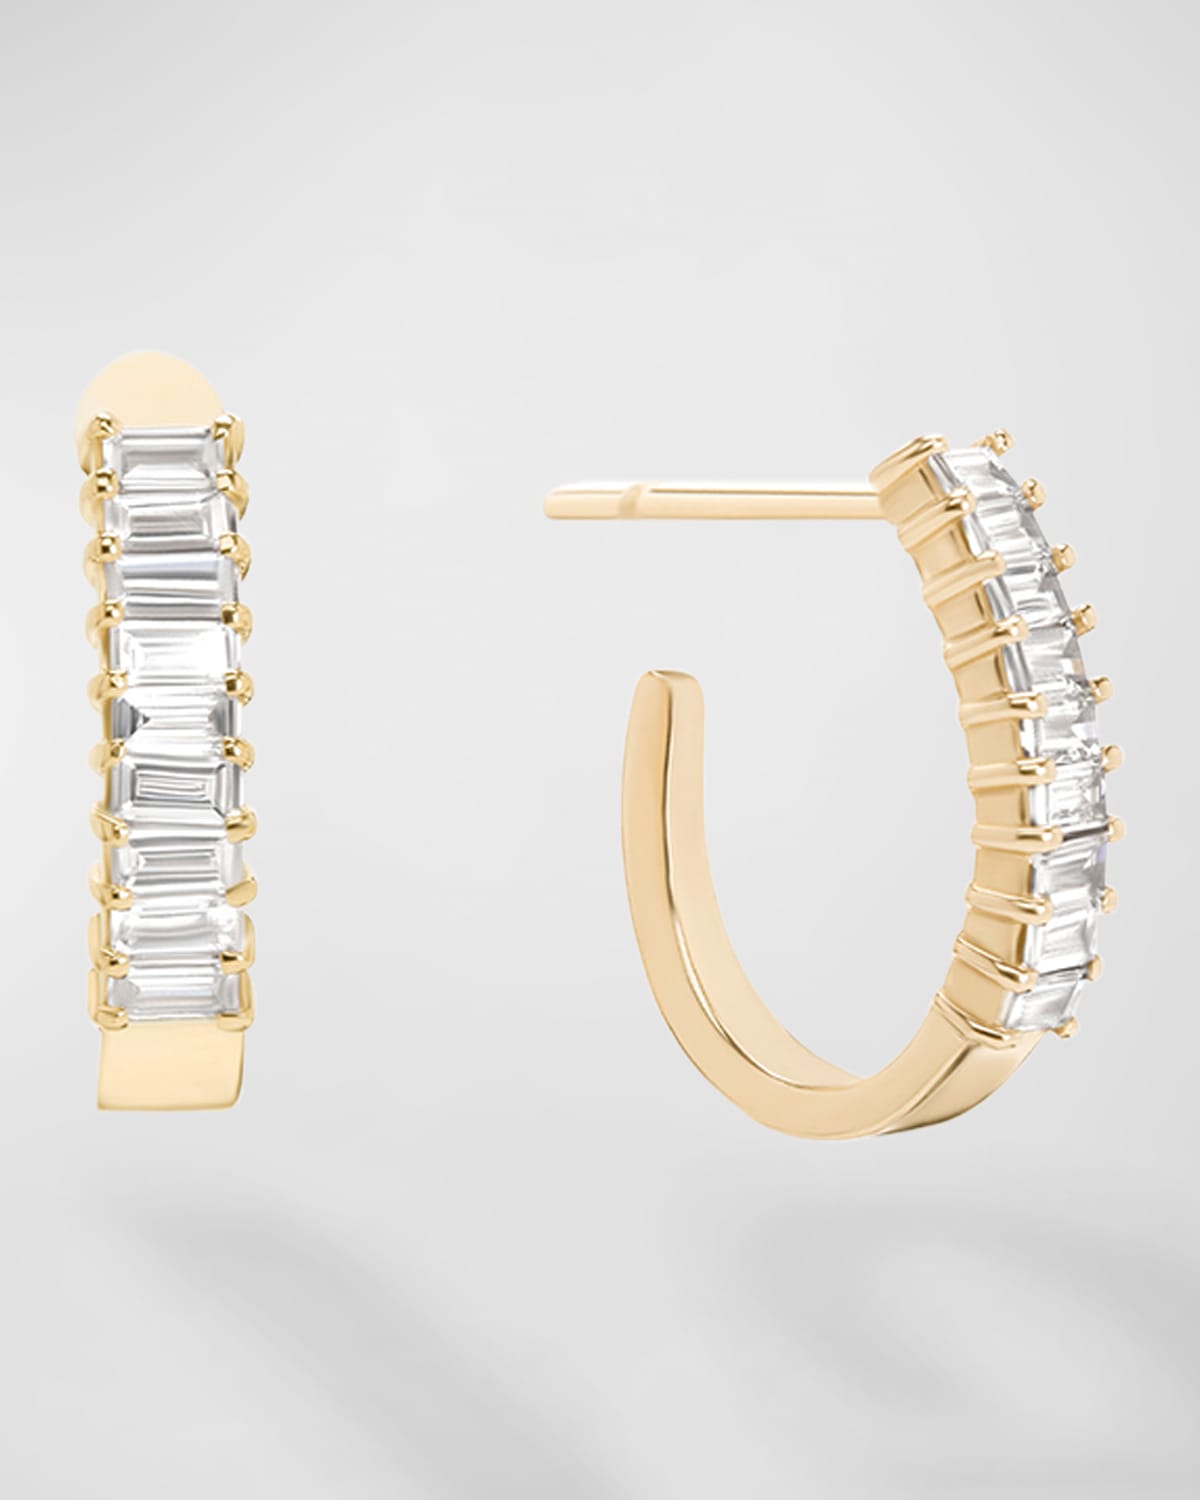 Lana 14k Gold Baguette Diamond Huggie Earrings, 0.5 Tcw